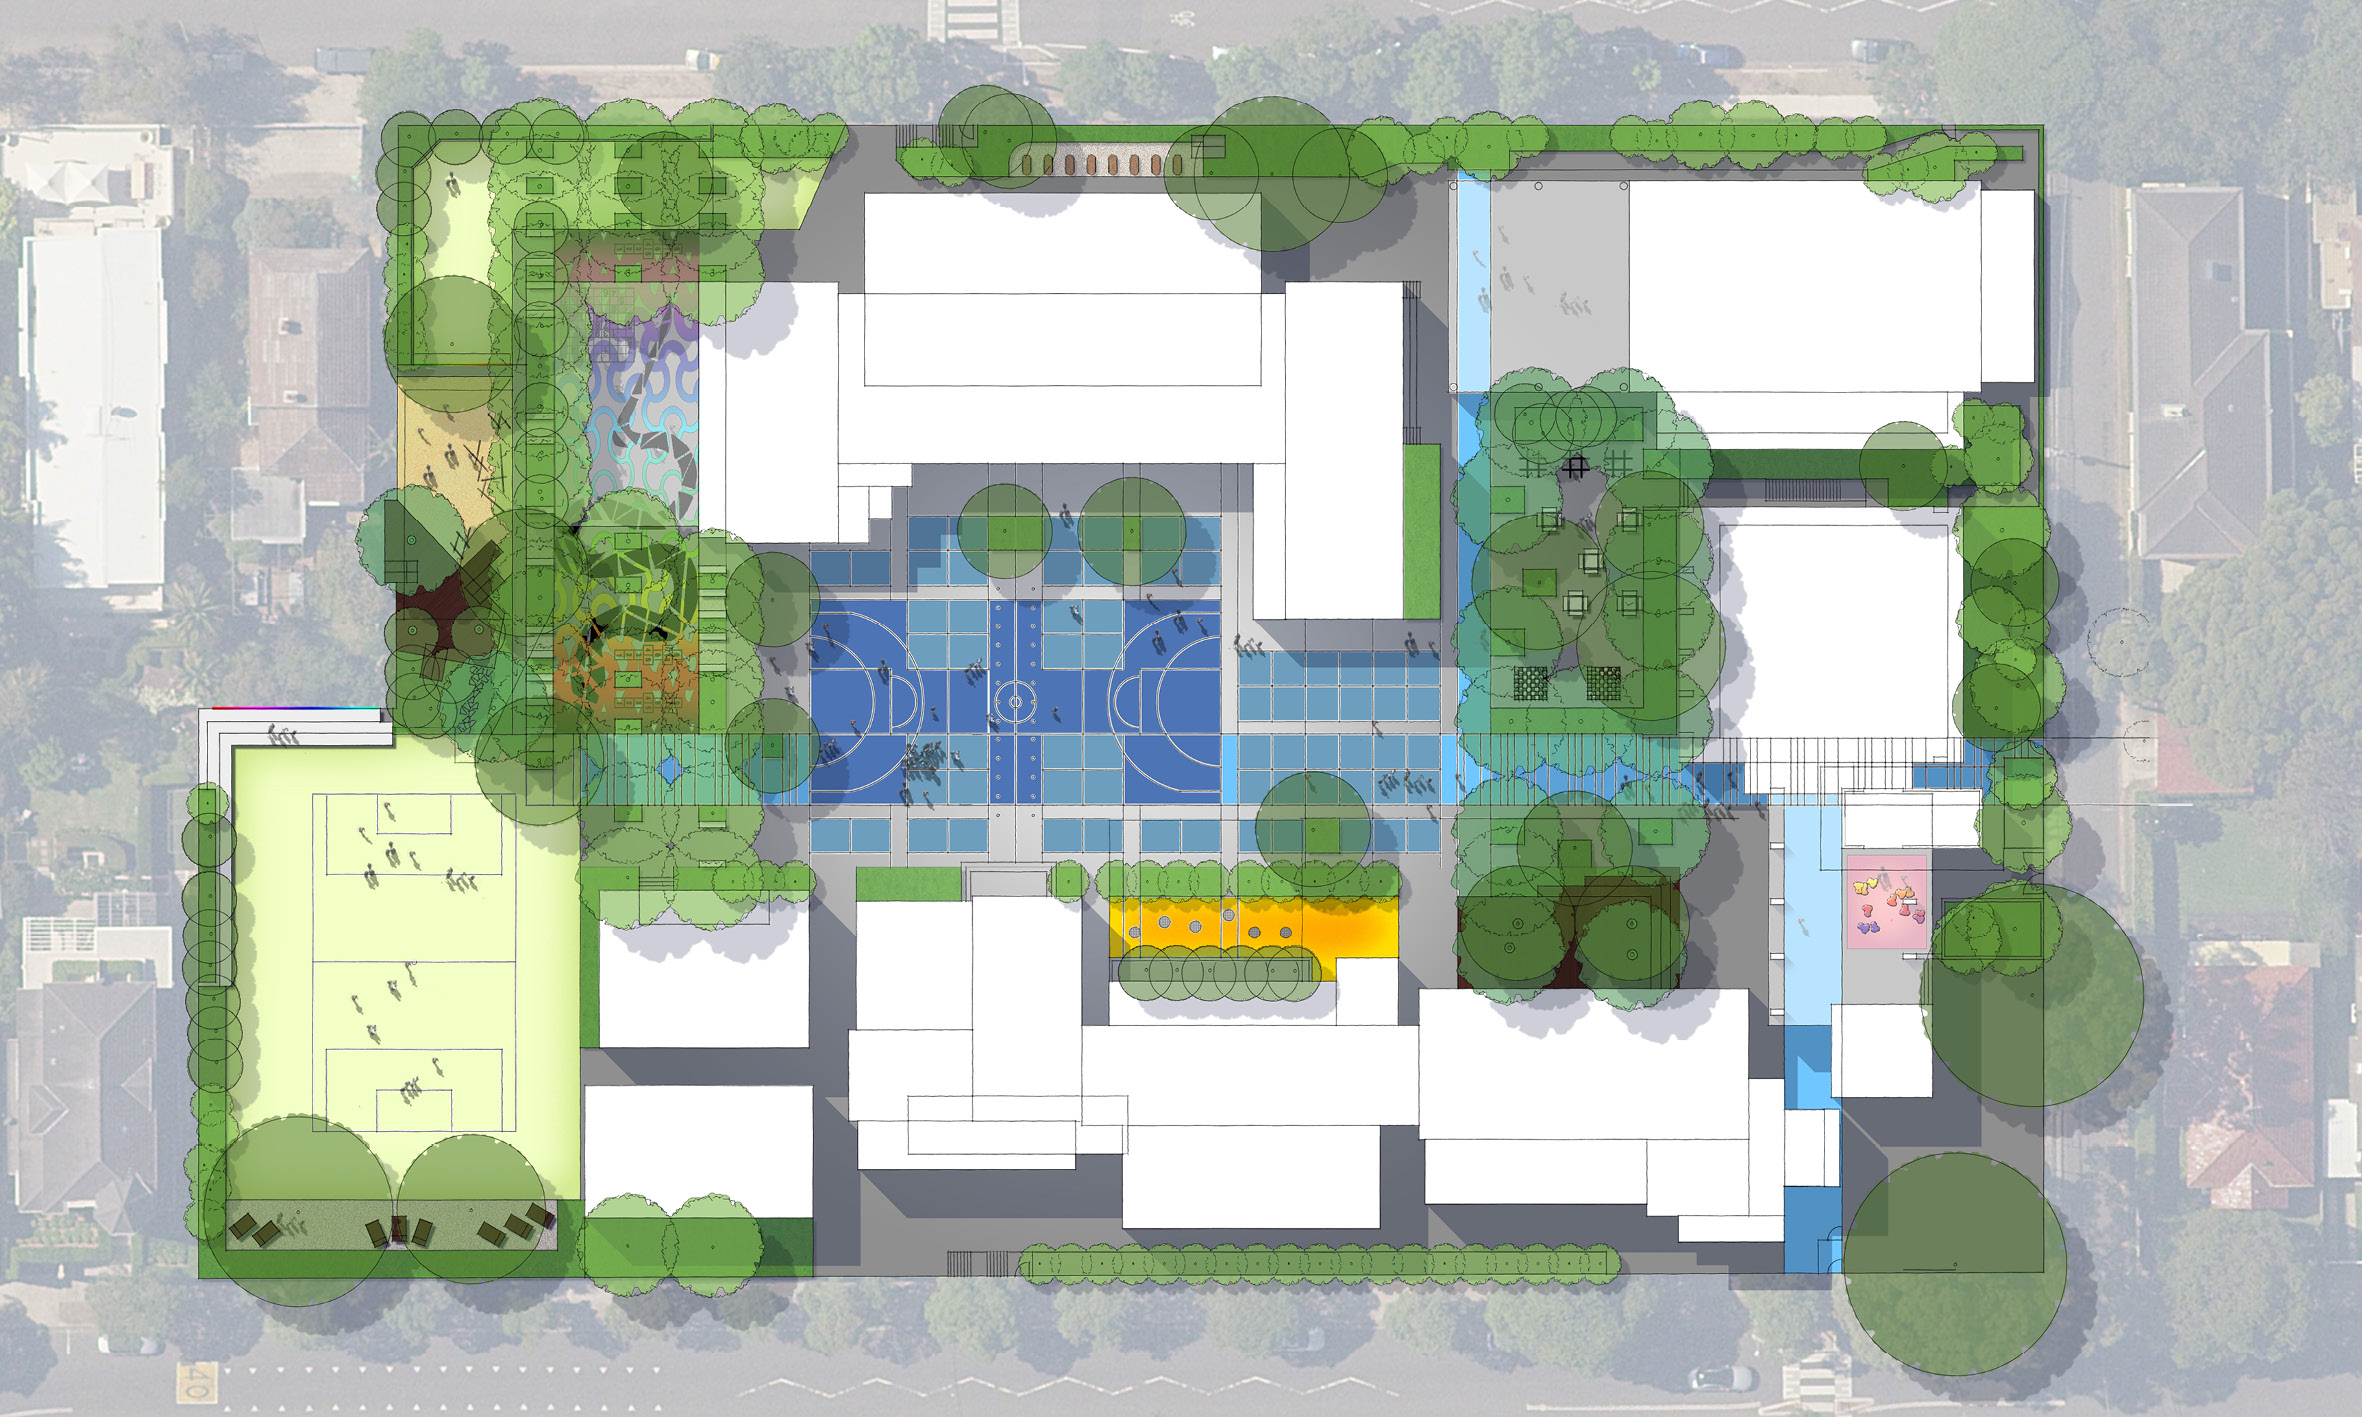 Rose Bay Public School Landscape Masterplan